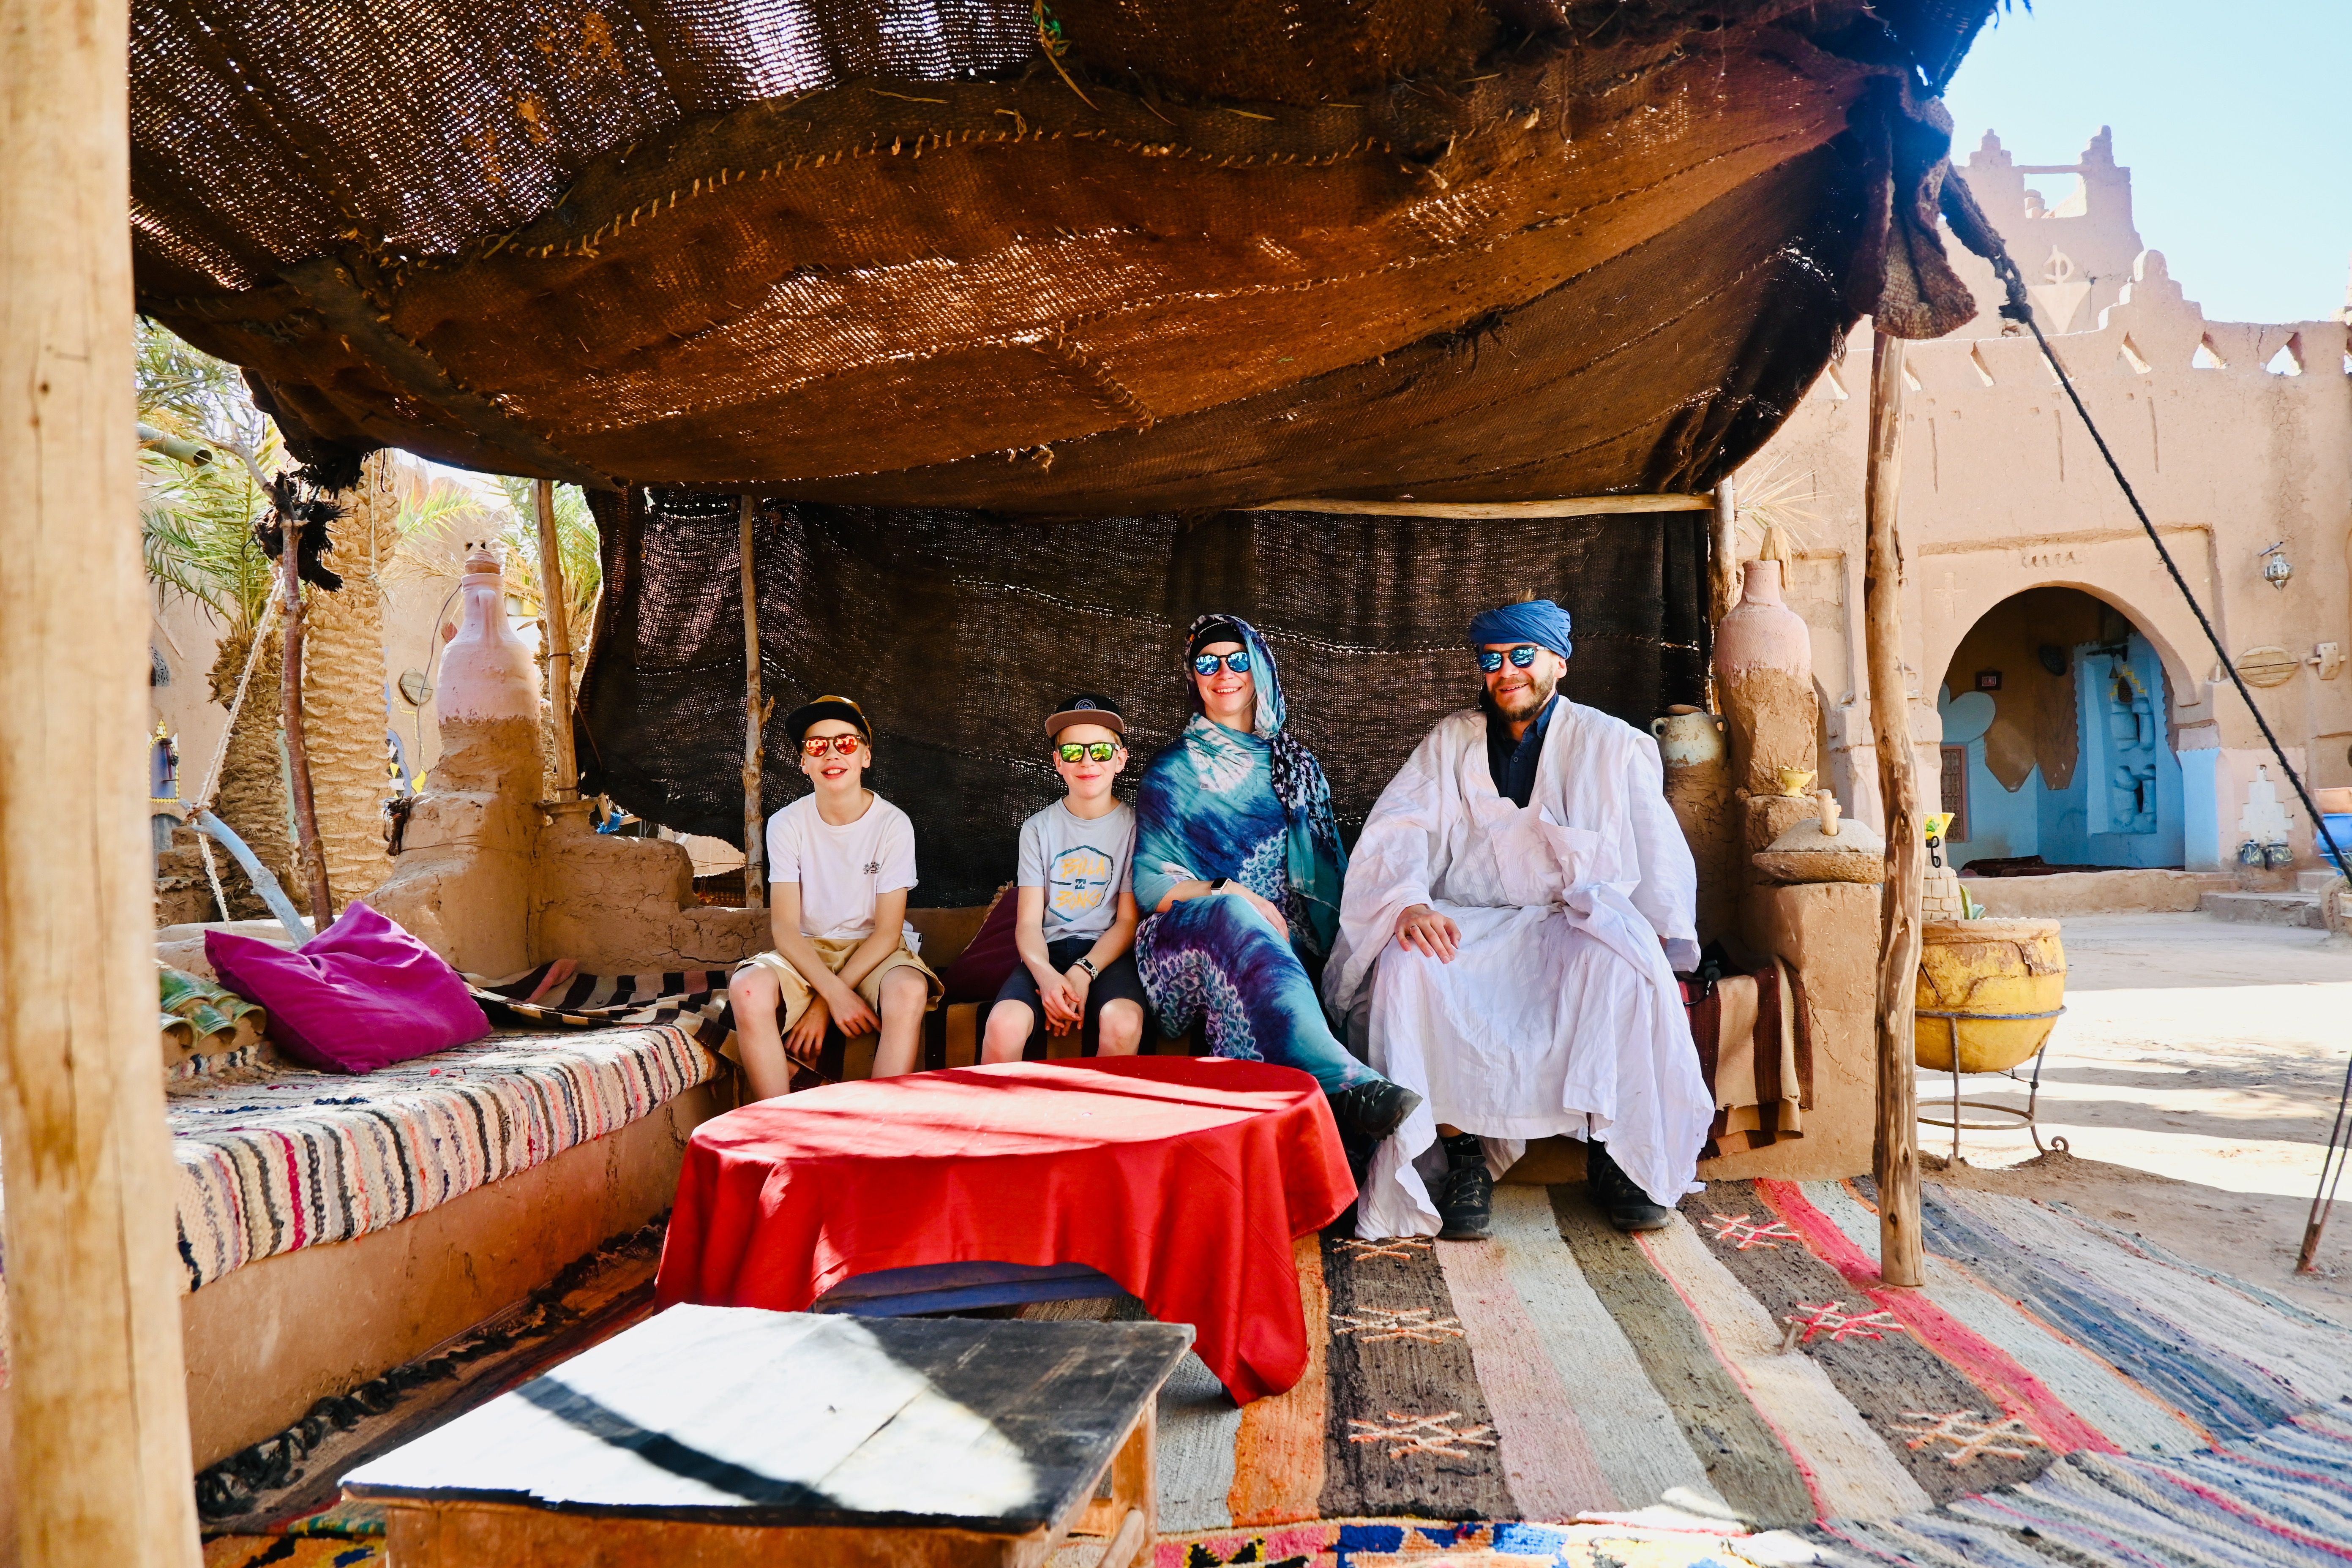 Marokko for family individuell - Erfahrungen mit Kindern in Marokko - Familie in traditioneller Kleidung